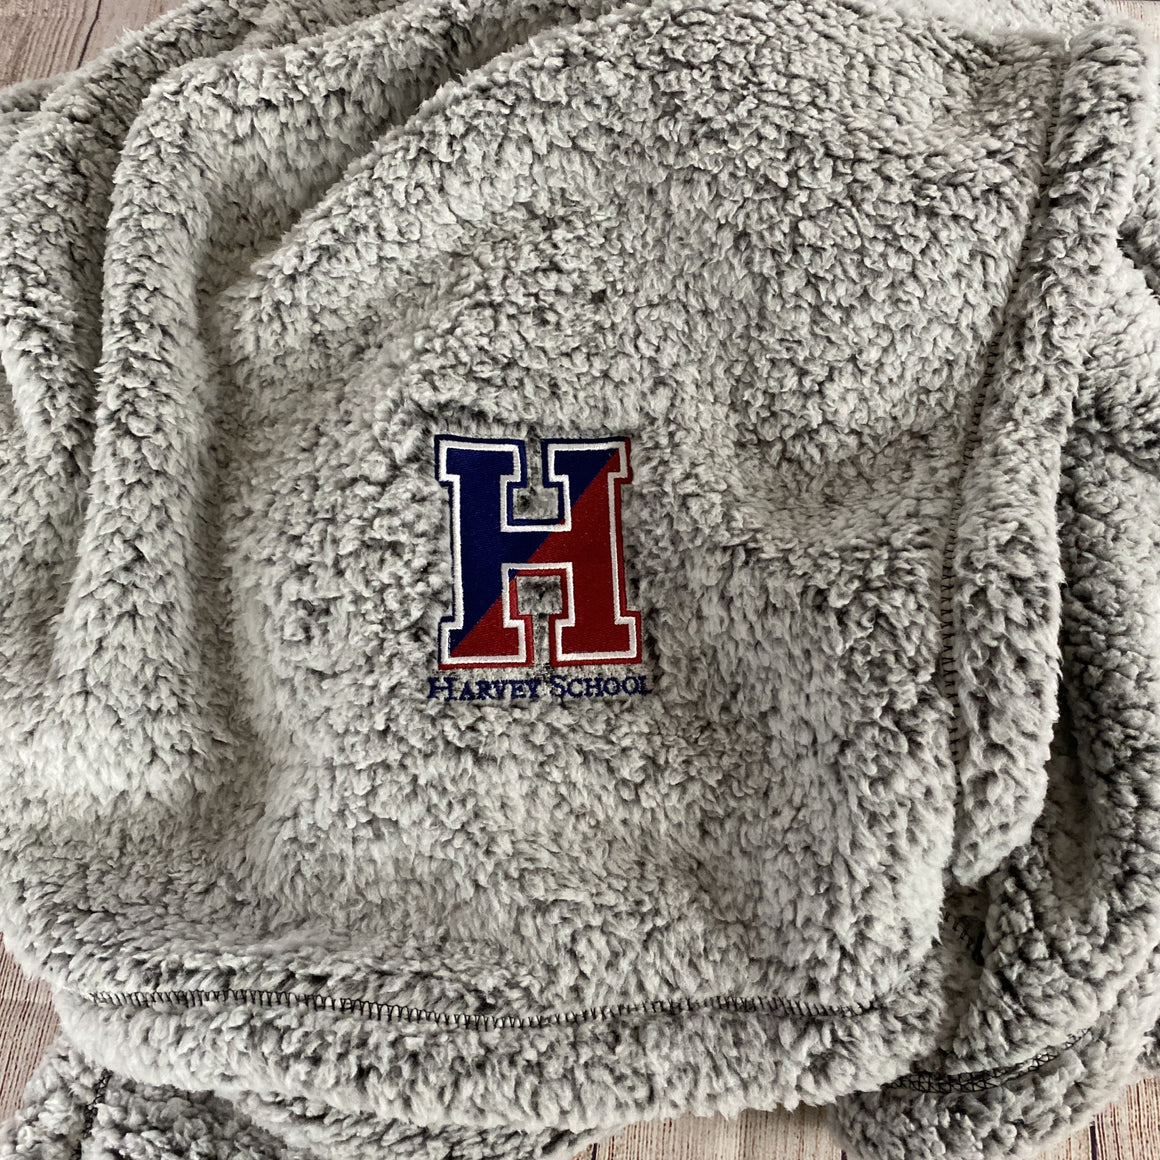 Harvey School Fuzzy Sherpa Blanket